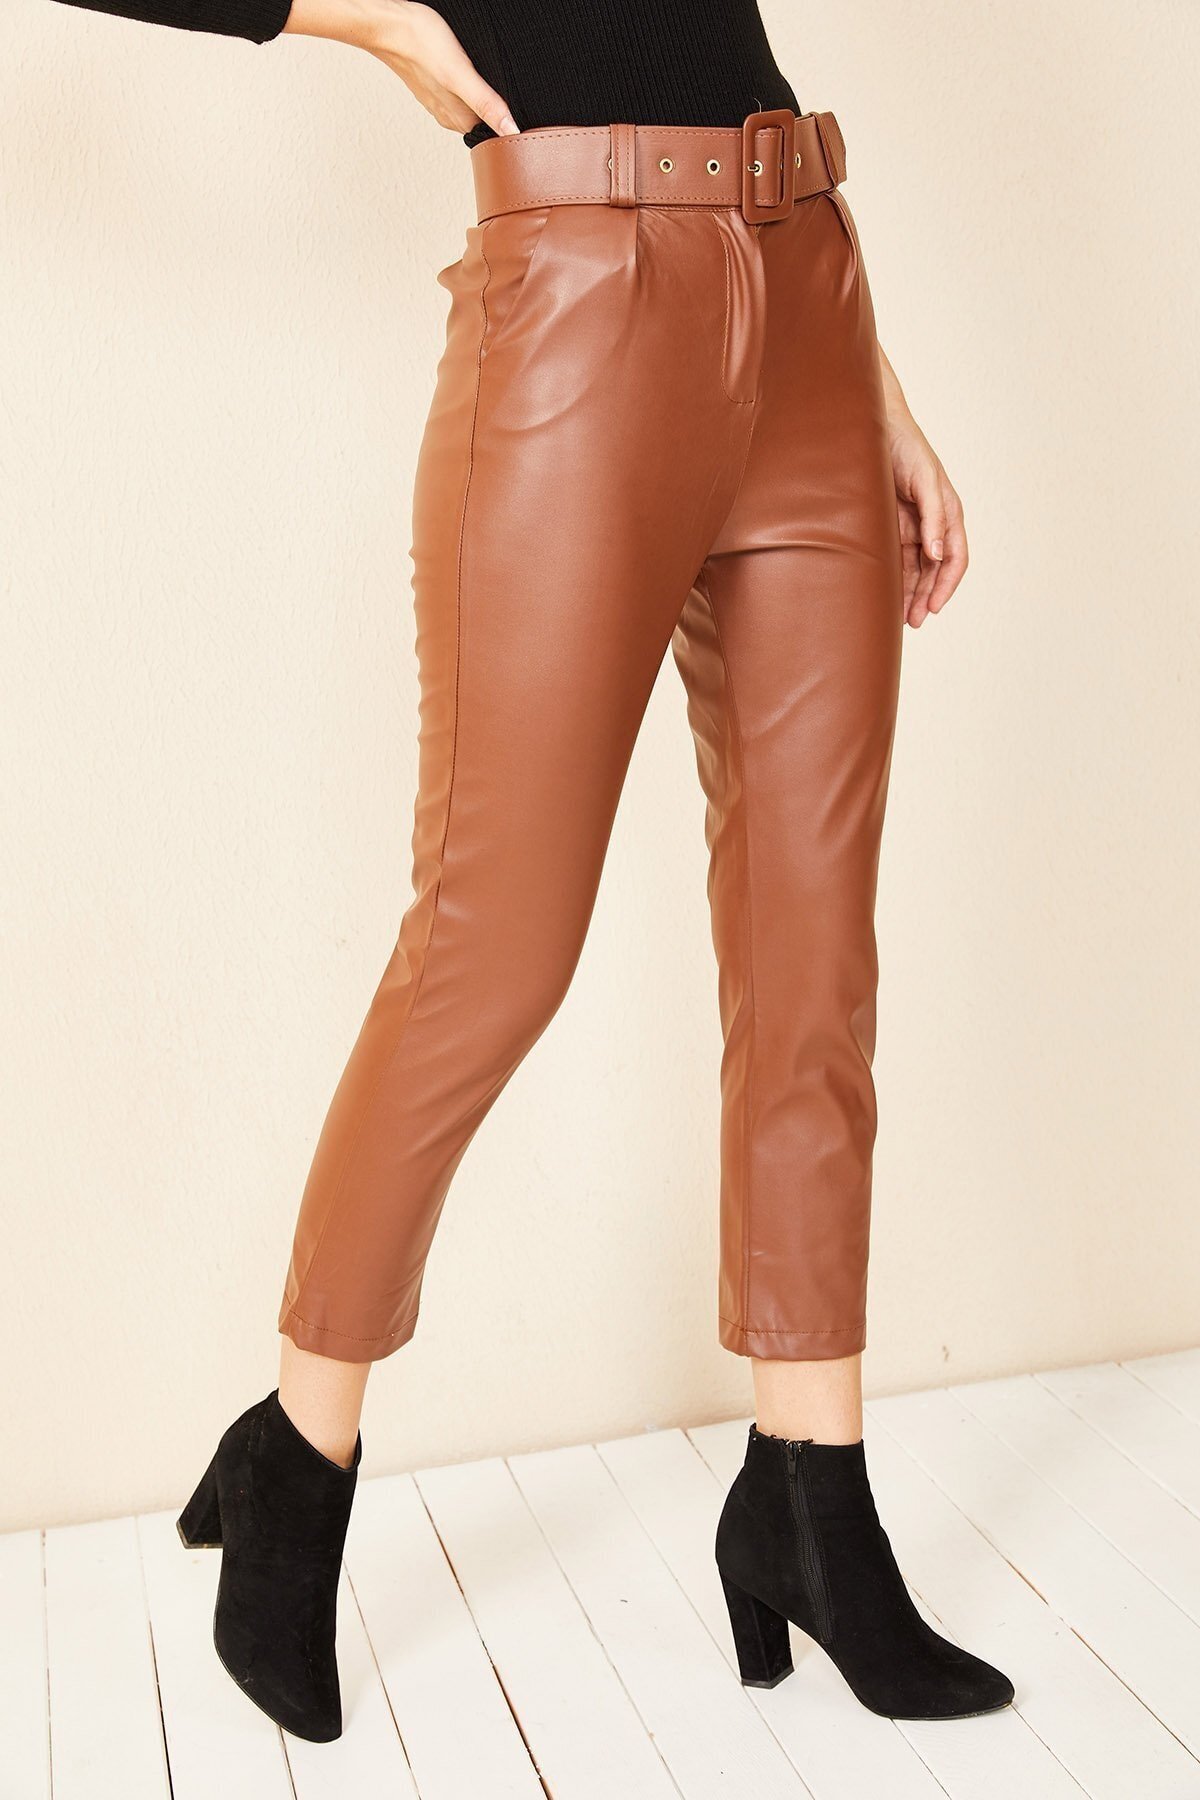 HAKKE Women's Carrot Model Leather Pants